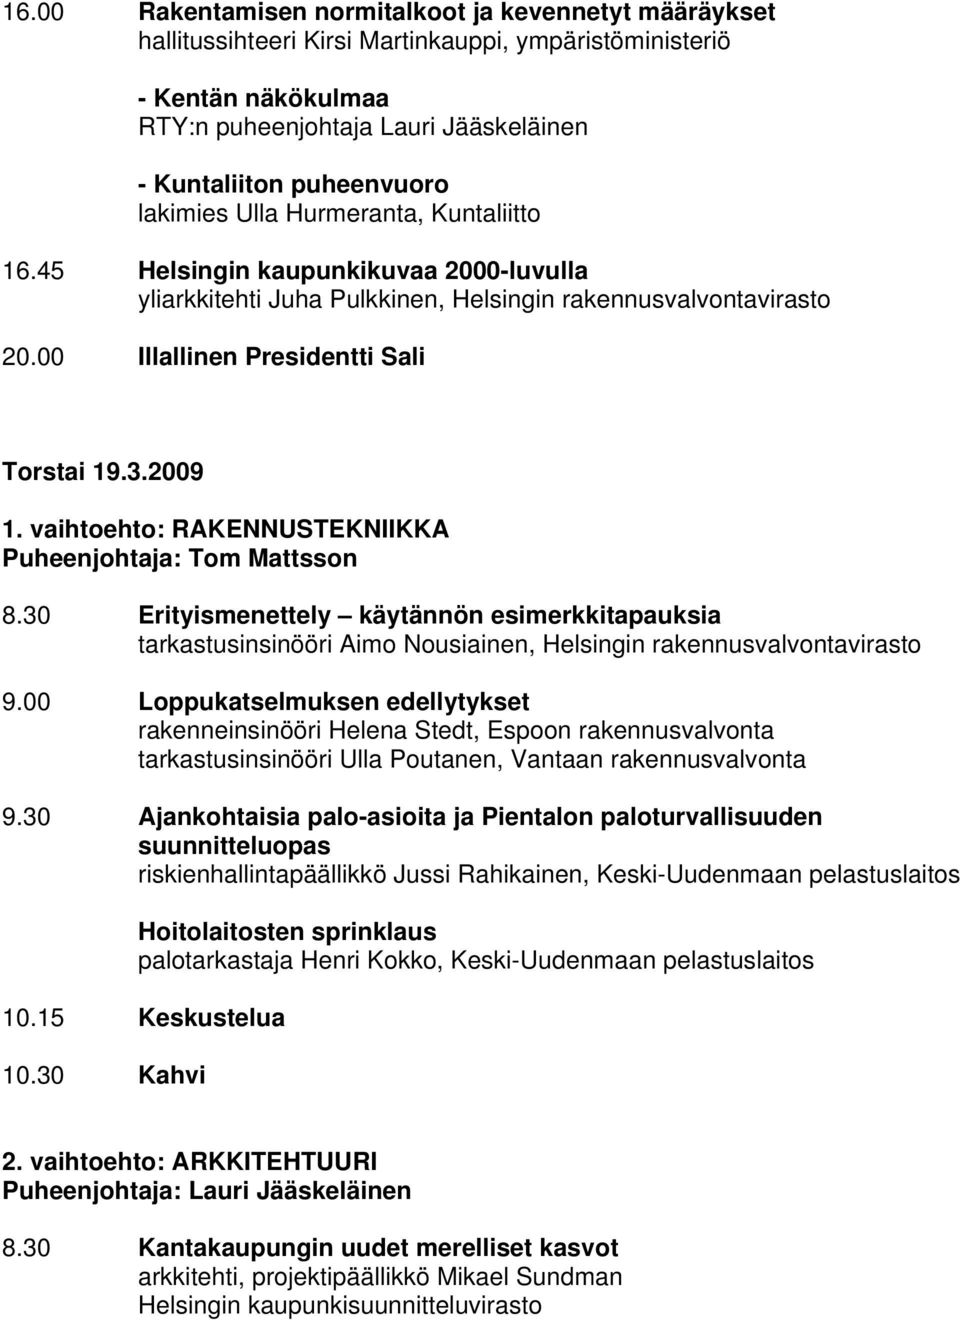 vaihtoehto: RAKENNUSTEKNIIKKA Puheenjohtaja: Tom Mattsson 8.30 Erityismenettely käytännön esimerkkitapauksia tarkastusinsinööri Aimo Nousiainen, Helsingin rakennusvalvontavirasto 9.